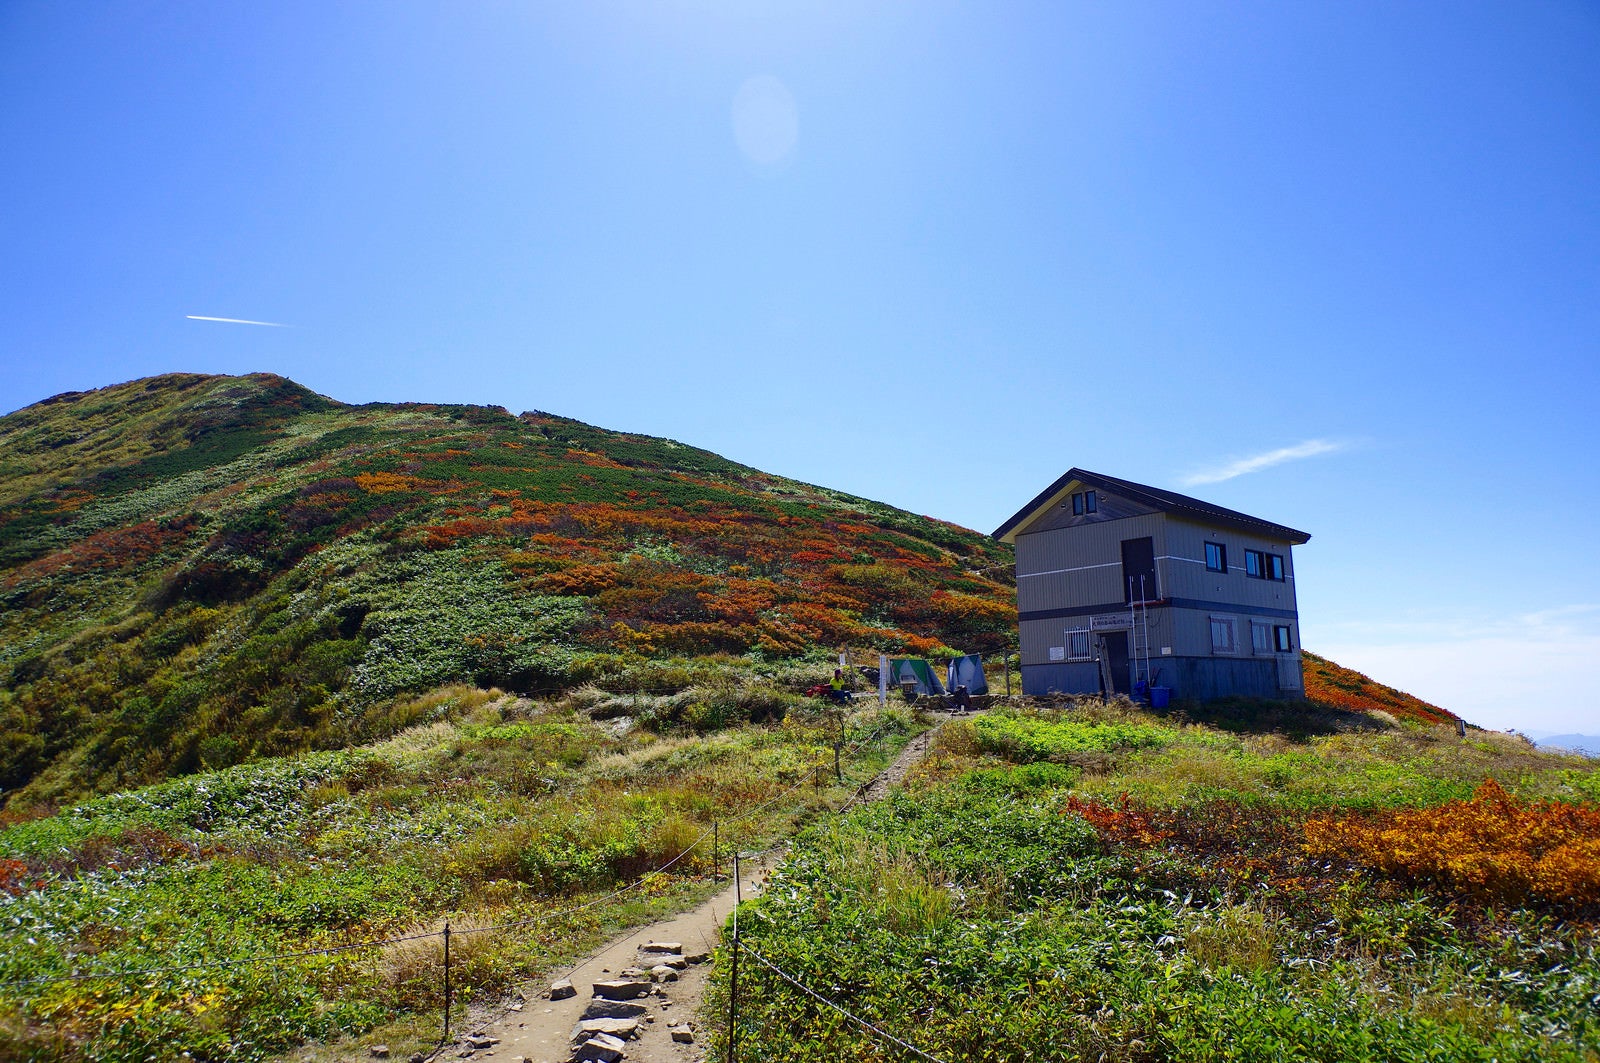 「大朝日岳避難小屋と山頂方面の景色」の写真